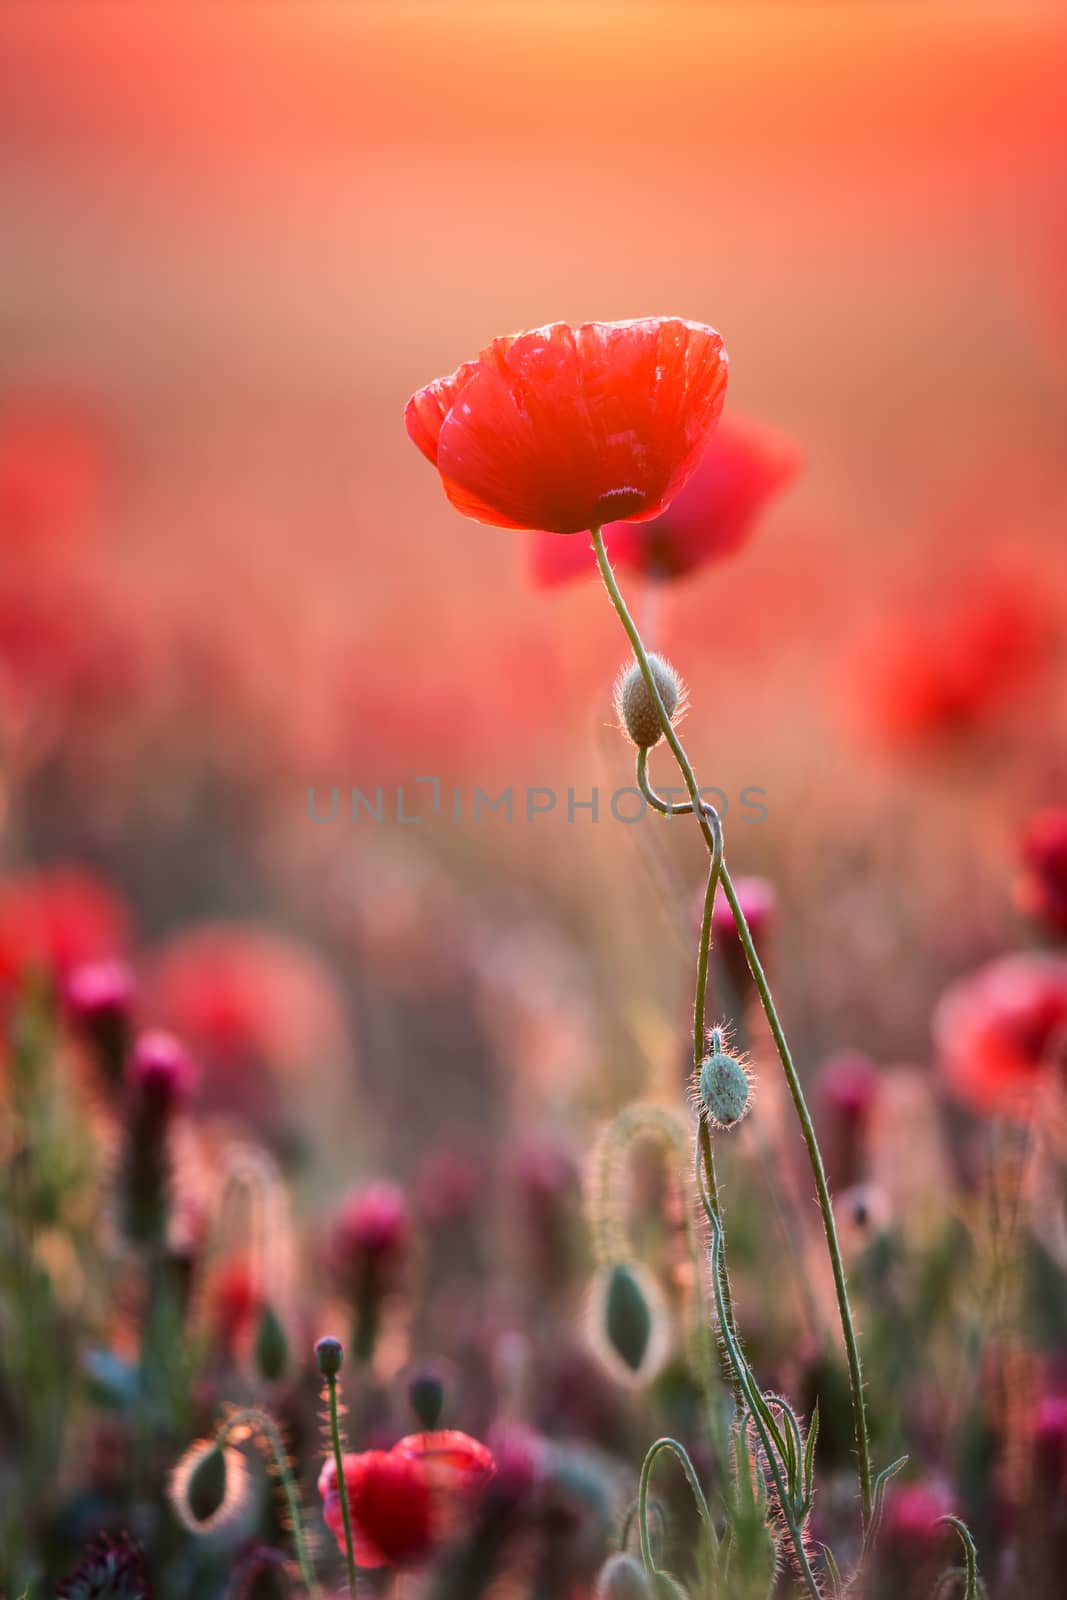 Poppy field by Digoarpi